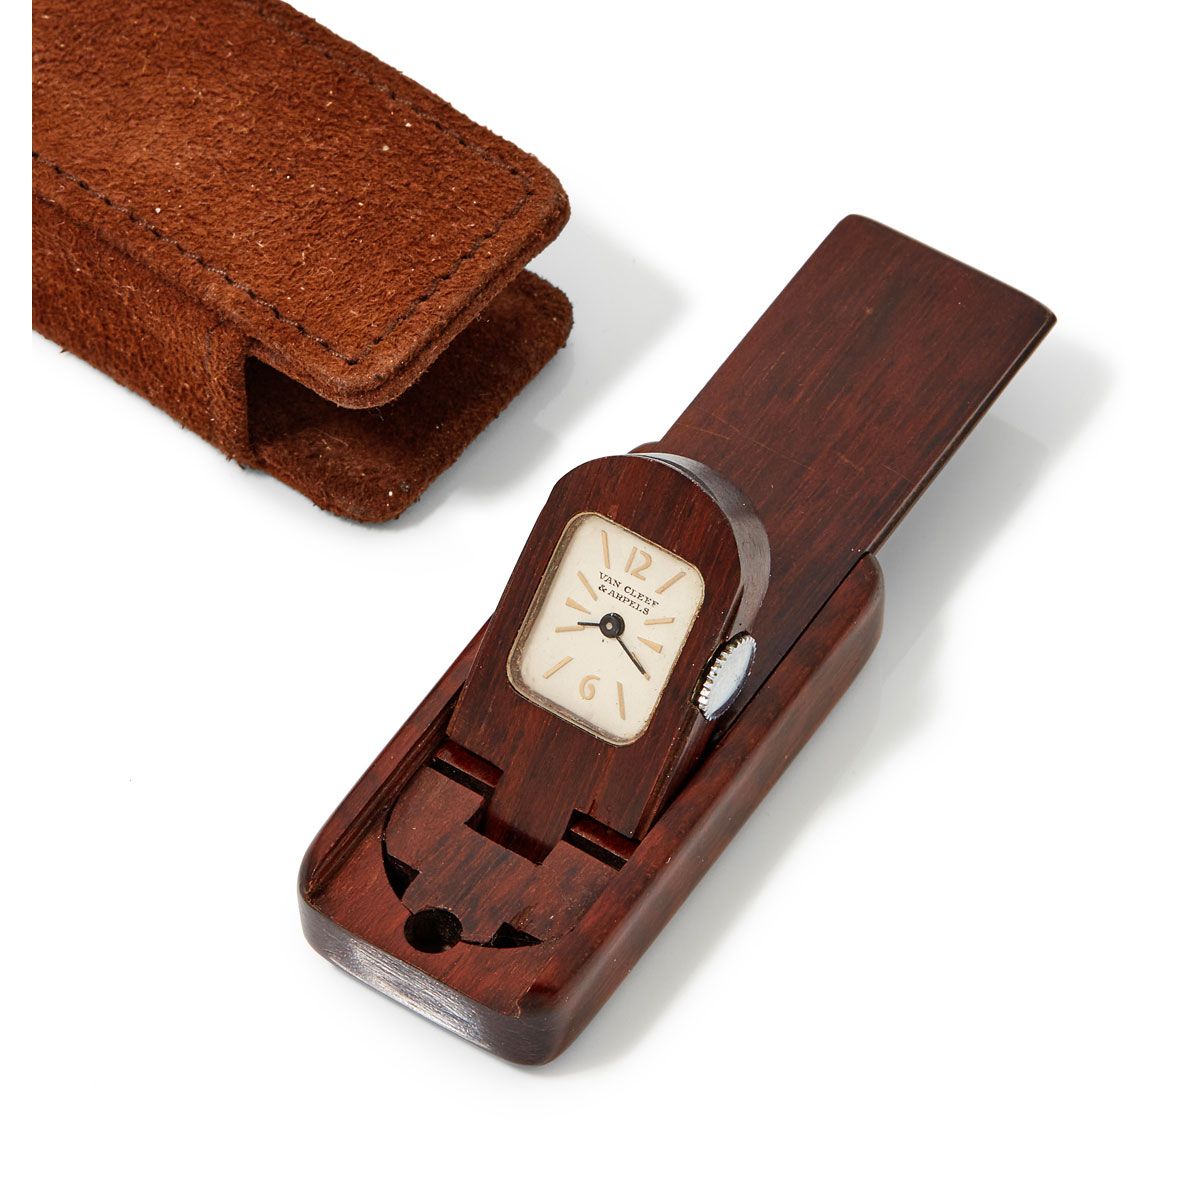 Null Van Cleef & Arpels，钱包表，约1960年。

一个迷你钢制钱包时钟隐藏在它的木制阿穆雷特箱中，带有滑轨，白色表盘，应用指标和黑色钢制&hellip;